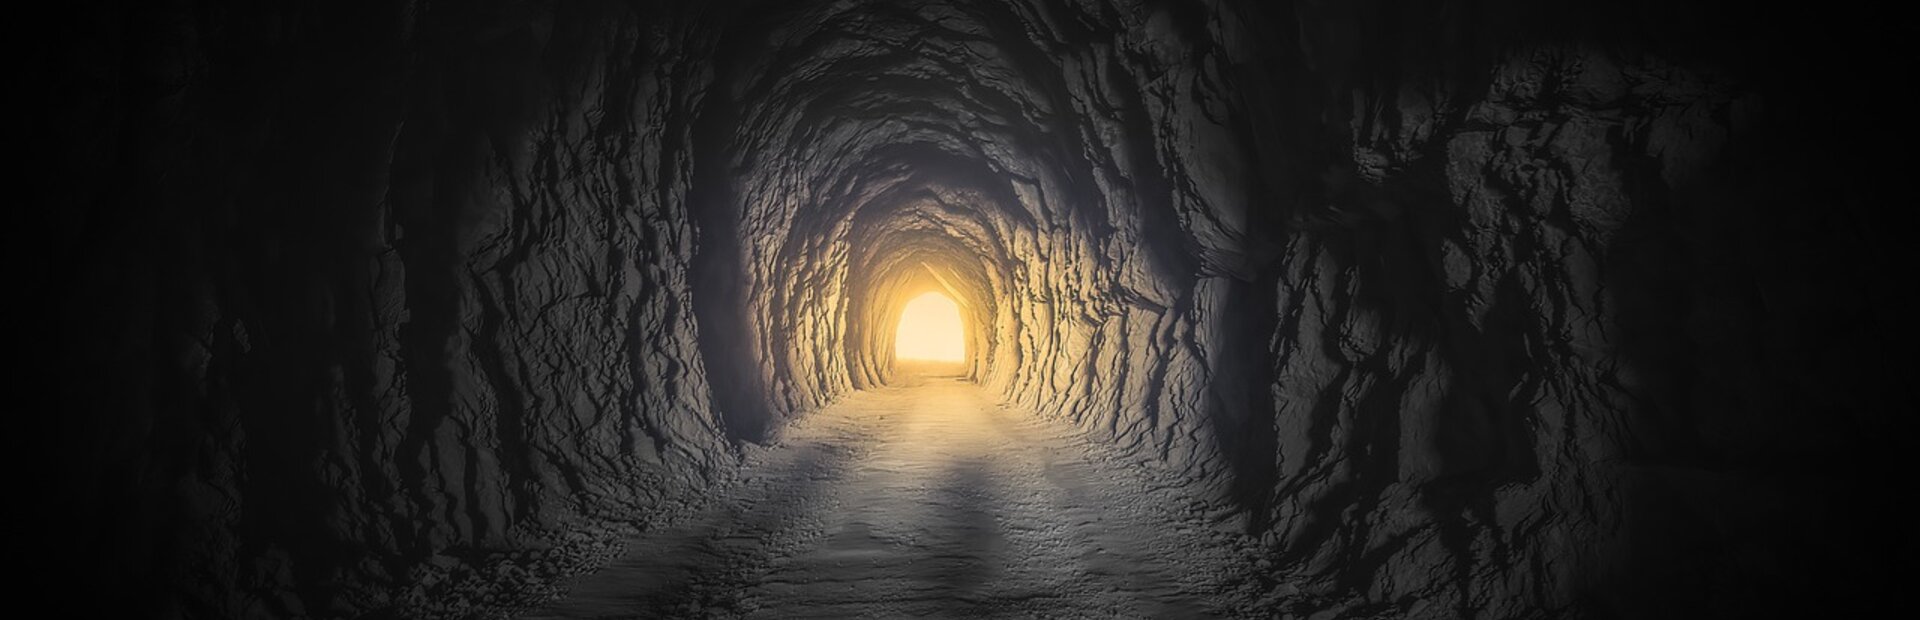 Licht am Ende des Tunnels | © Bild von Franz Bachinger auf Pixabay